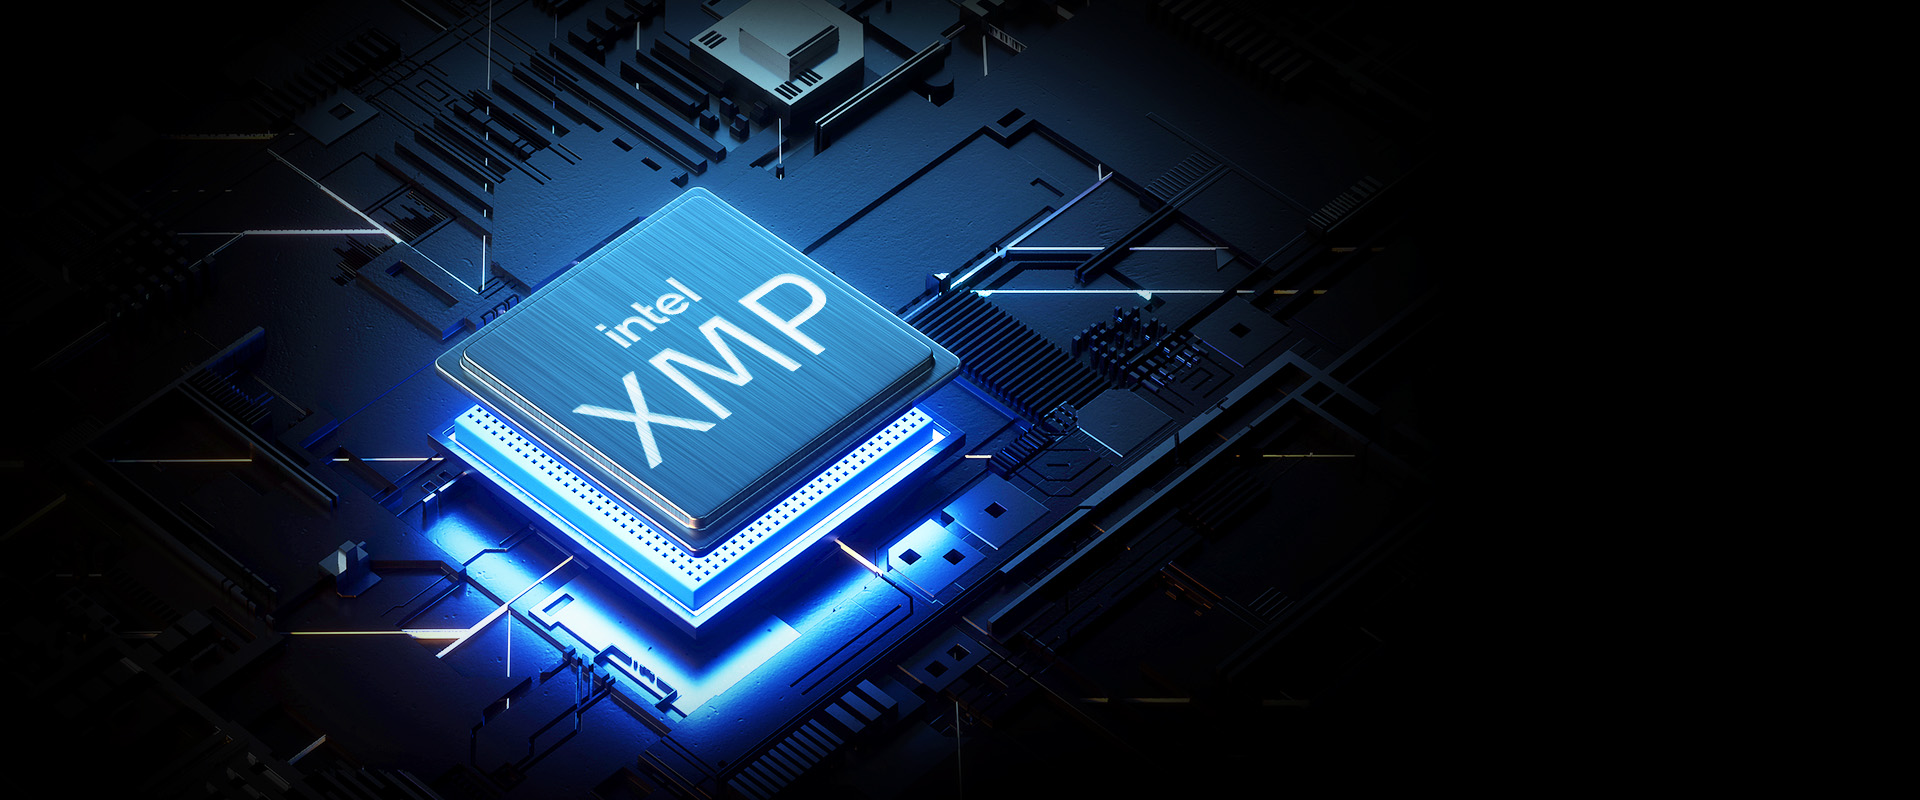 Supports Intel XMP 2.0